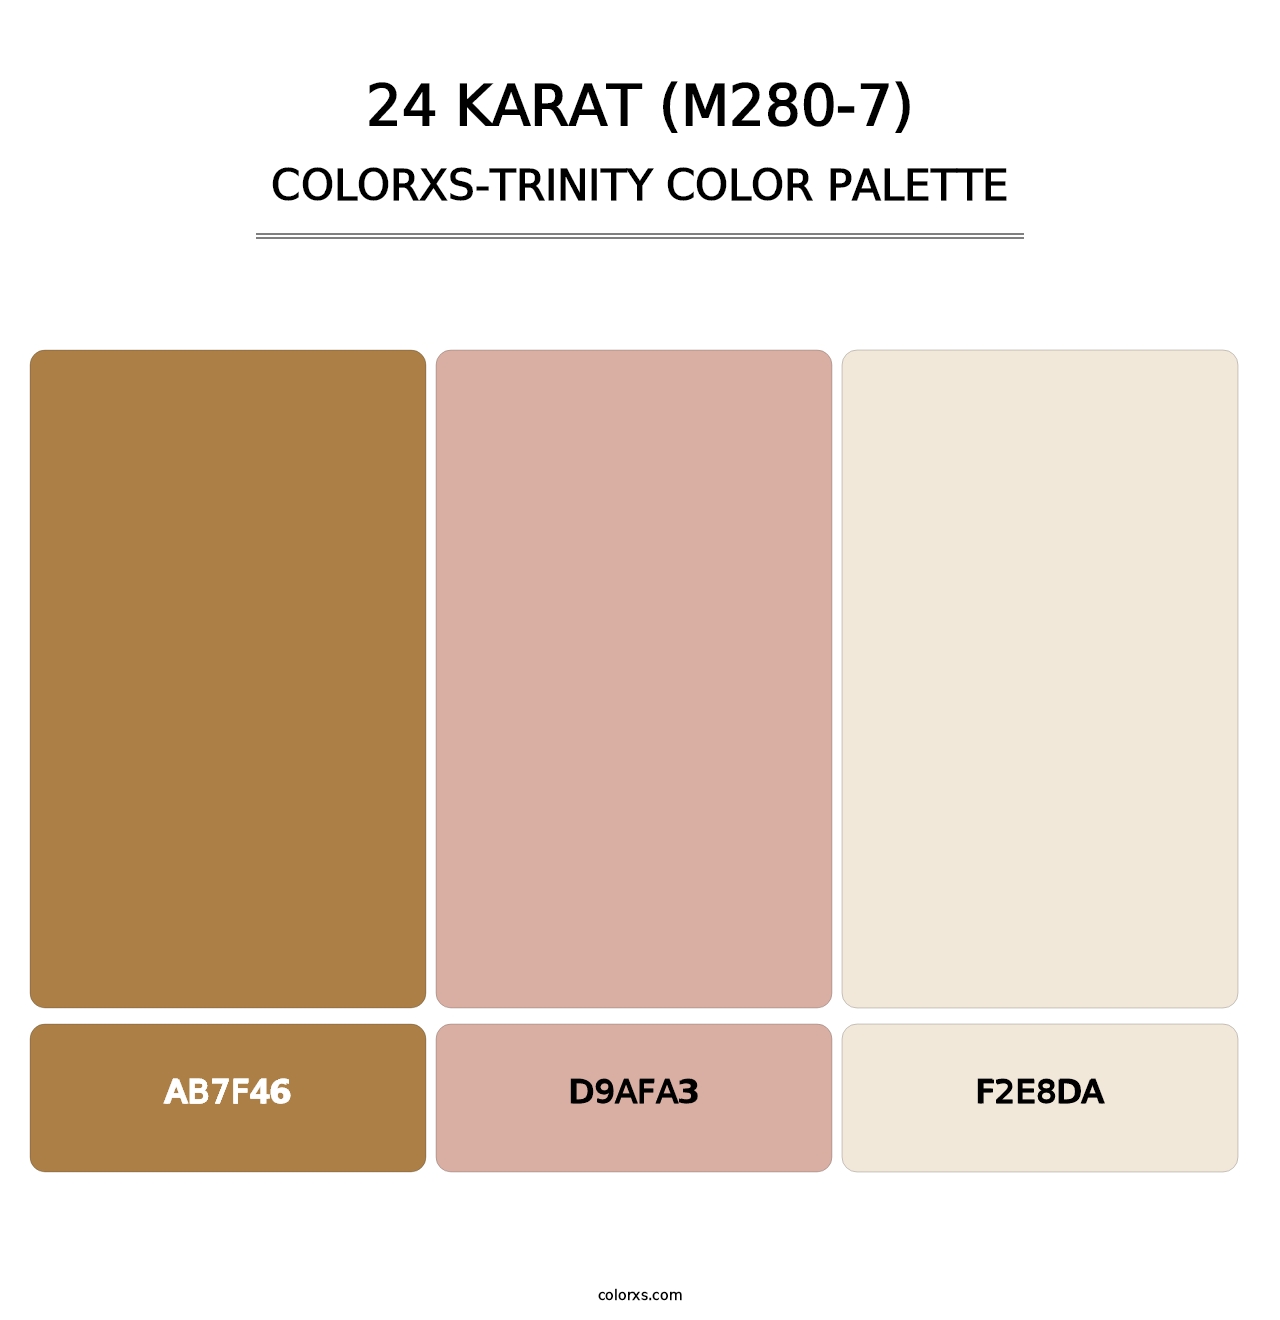 24 Karat (M280-7) - Colorxs Trinity Palette